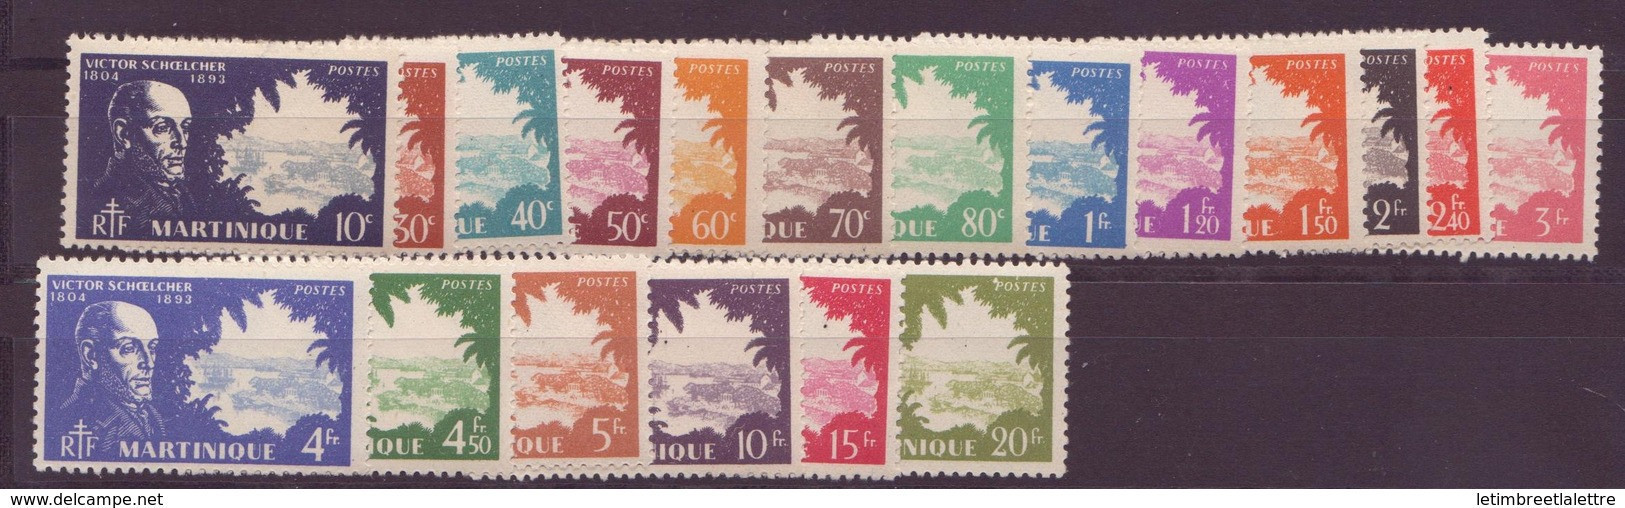 ⭐ Martinique - YT N° 199 à 217 ** - Neuf Sans Charnière - 1938 ⭐ - Unused Stamps